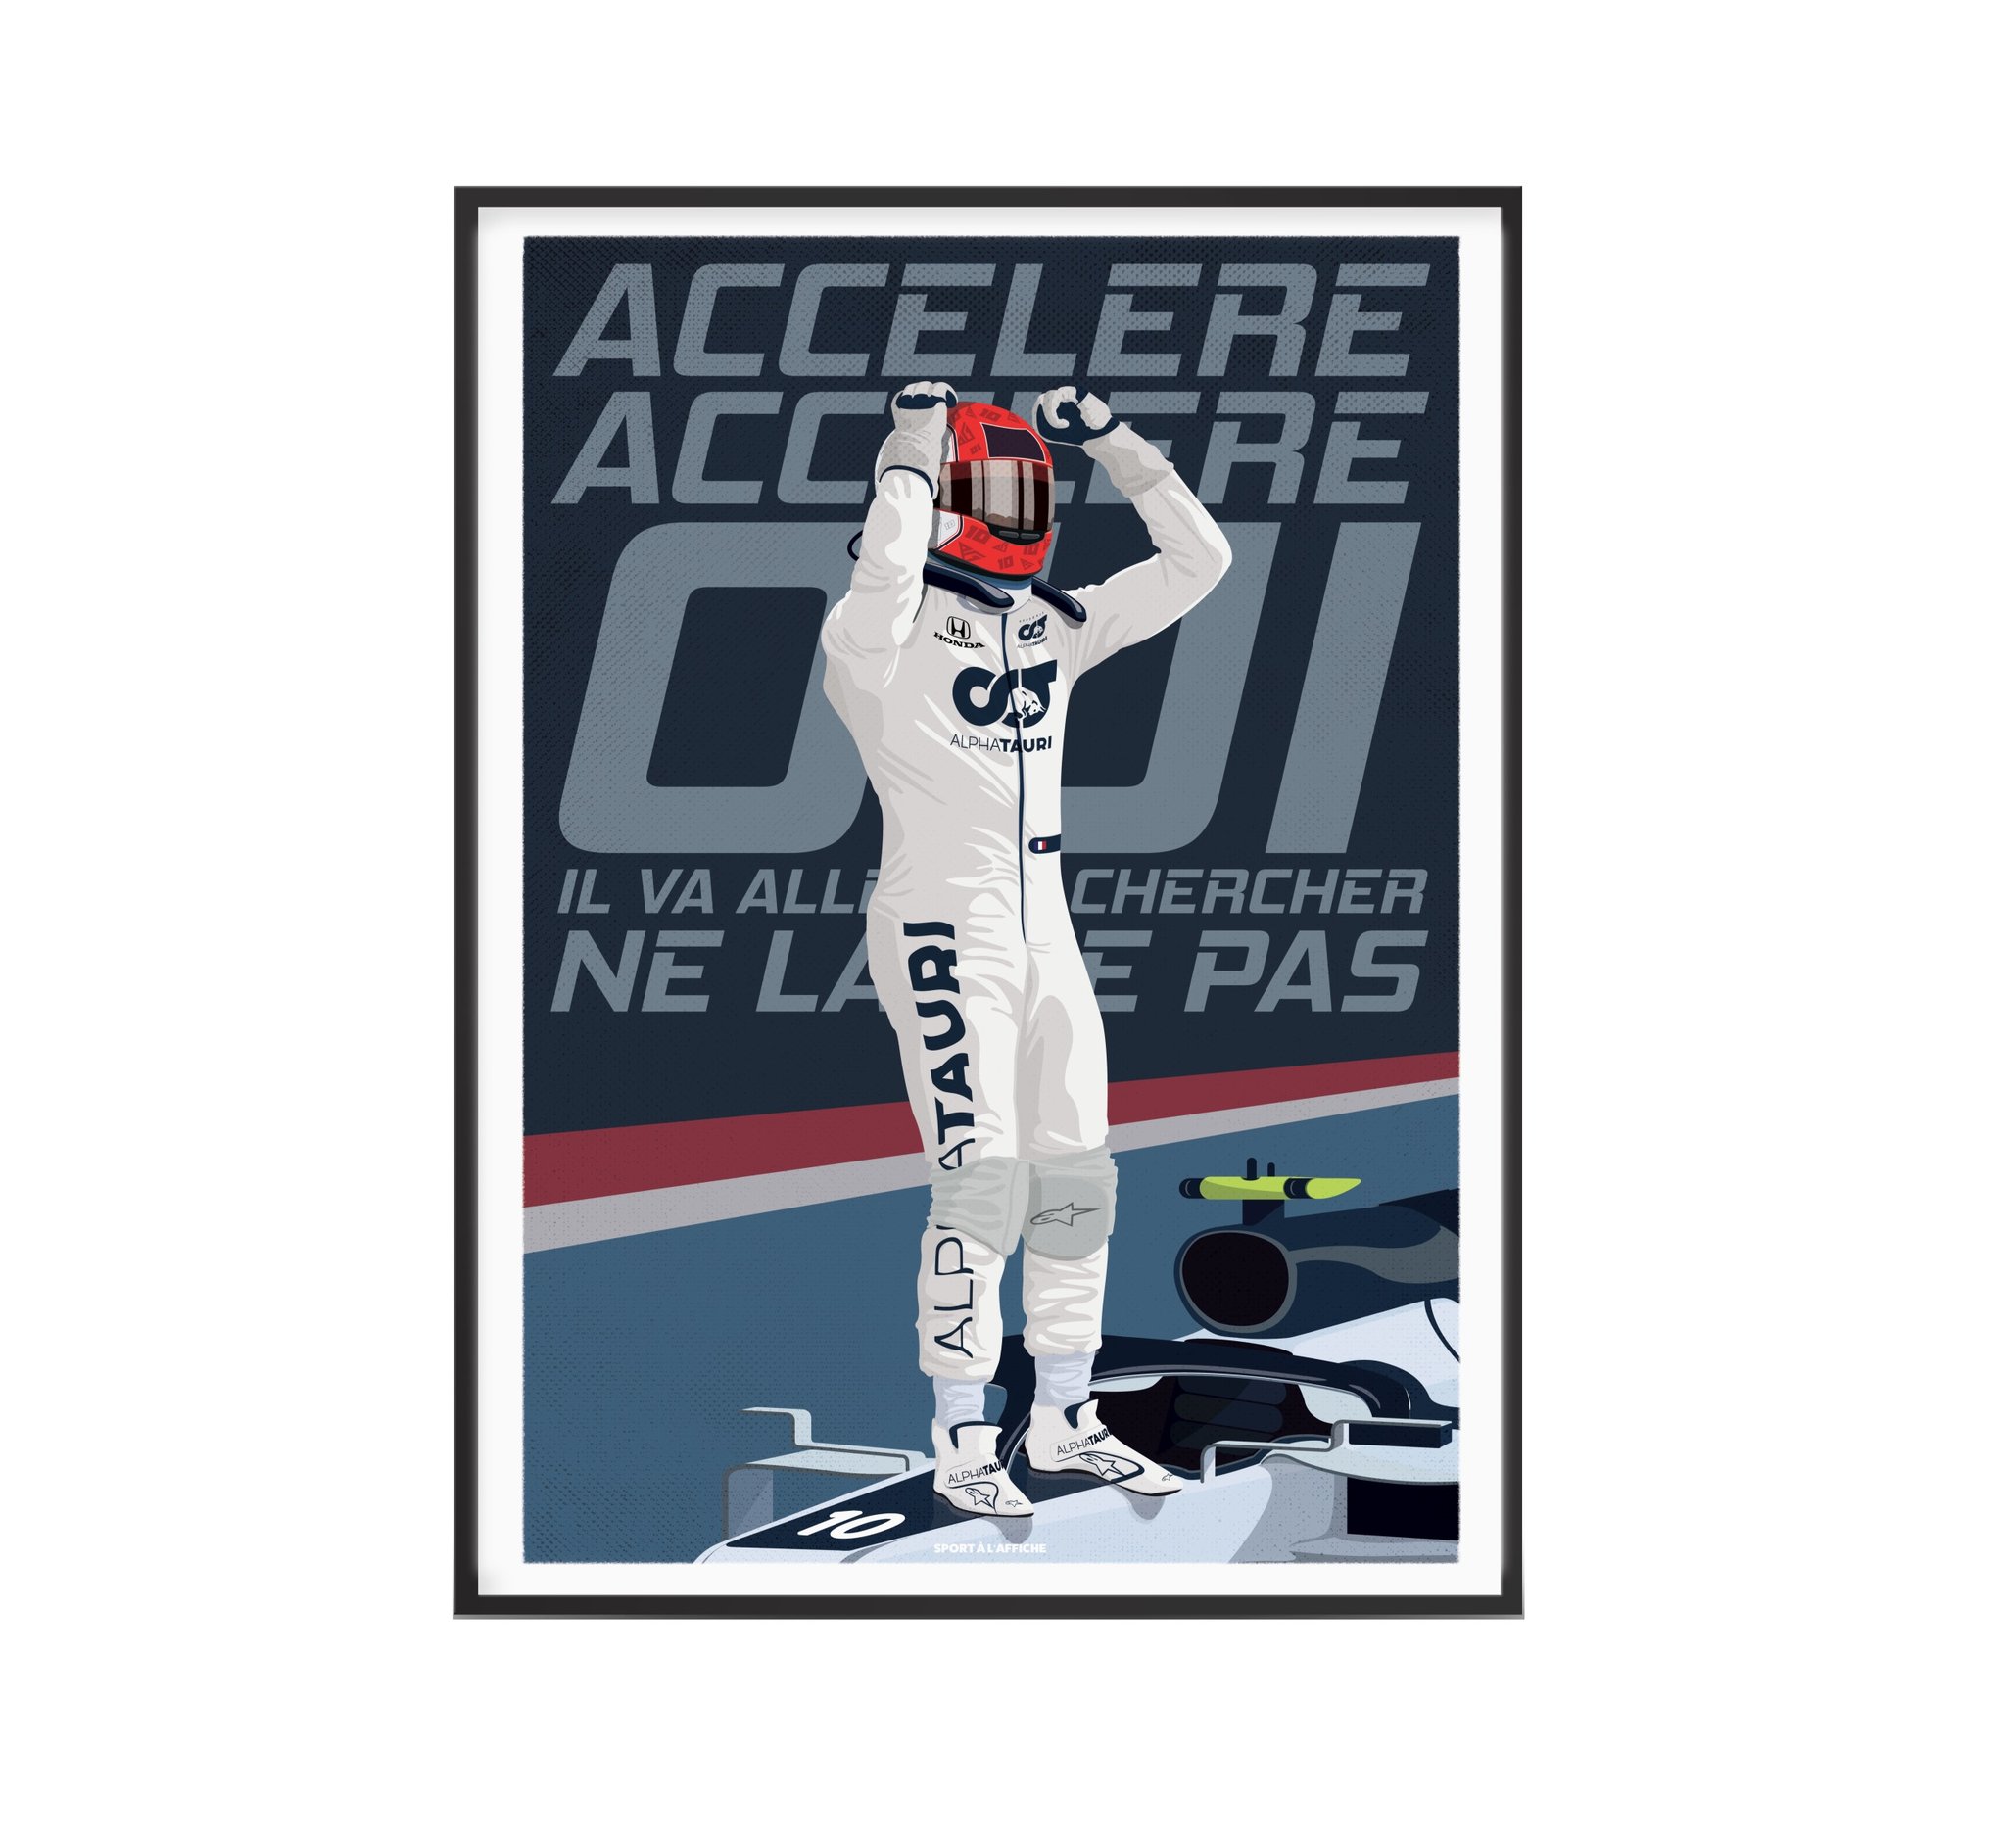 Affiche Formule 1 - Accélère Accélère Pierre - 40 x 60 cm